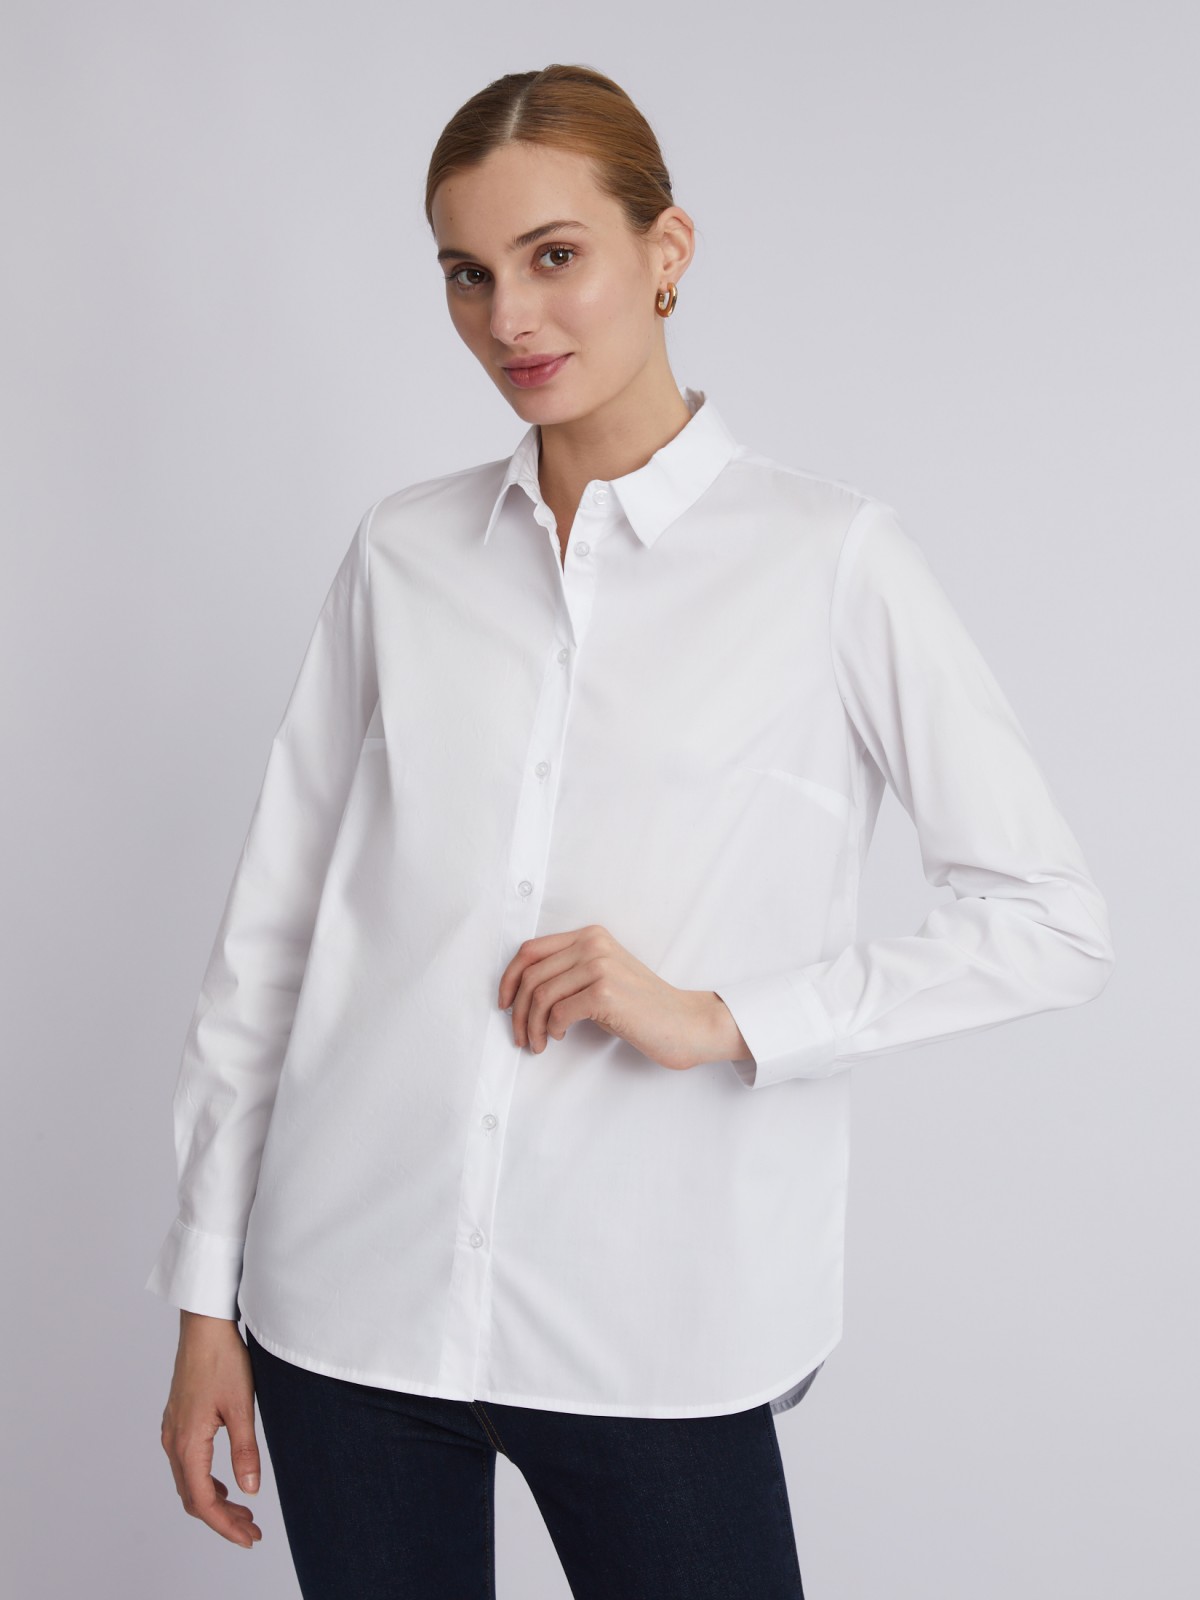 Офисная рубашка с длинным рукавом zolla 023311159152, цвет белый, размер XS - фото 3